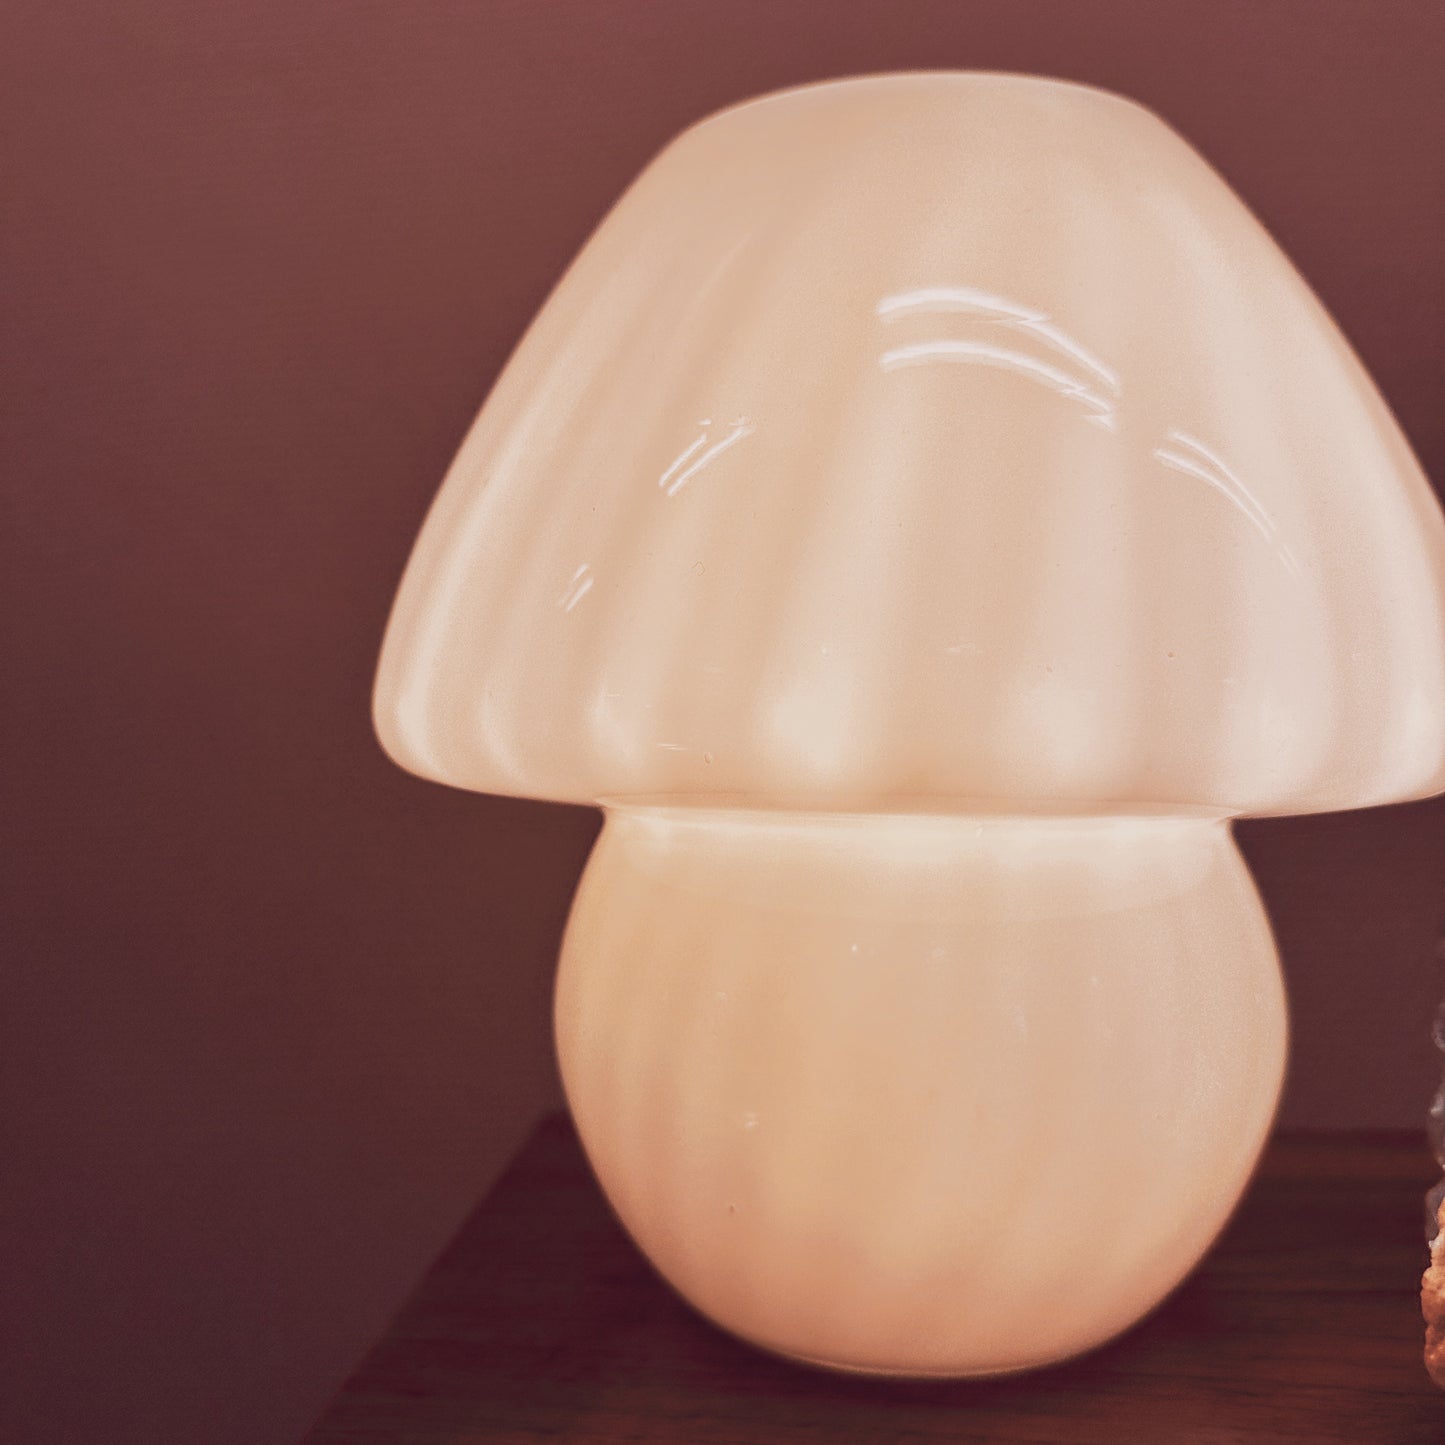 Peill & putzler mushroom lamp